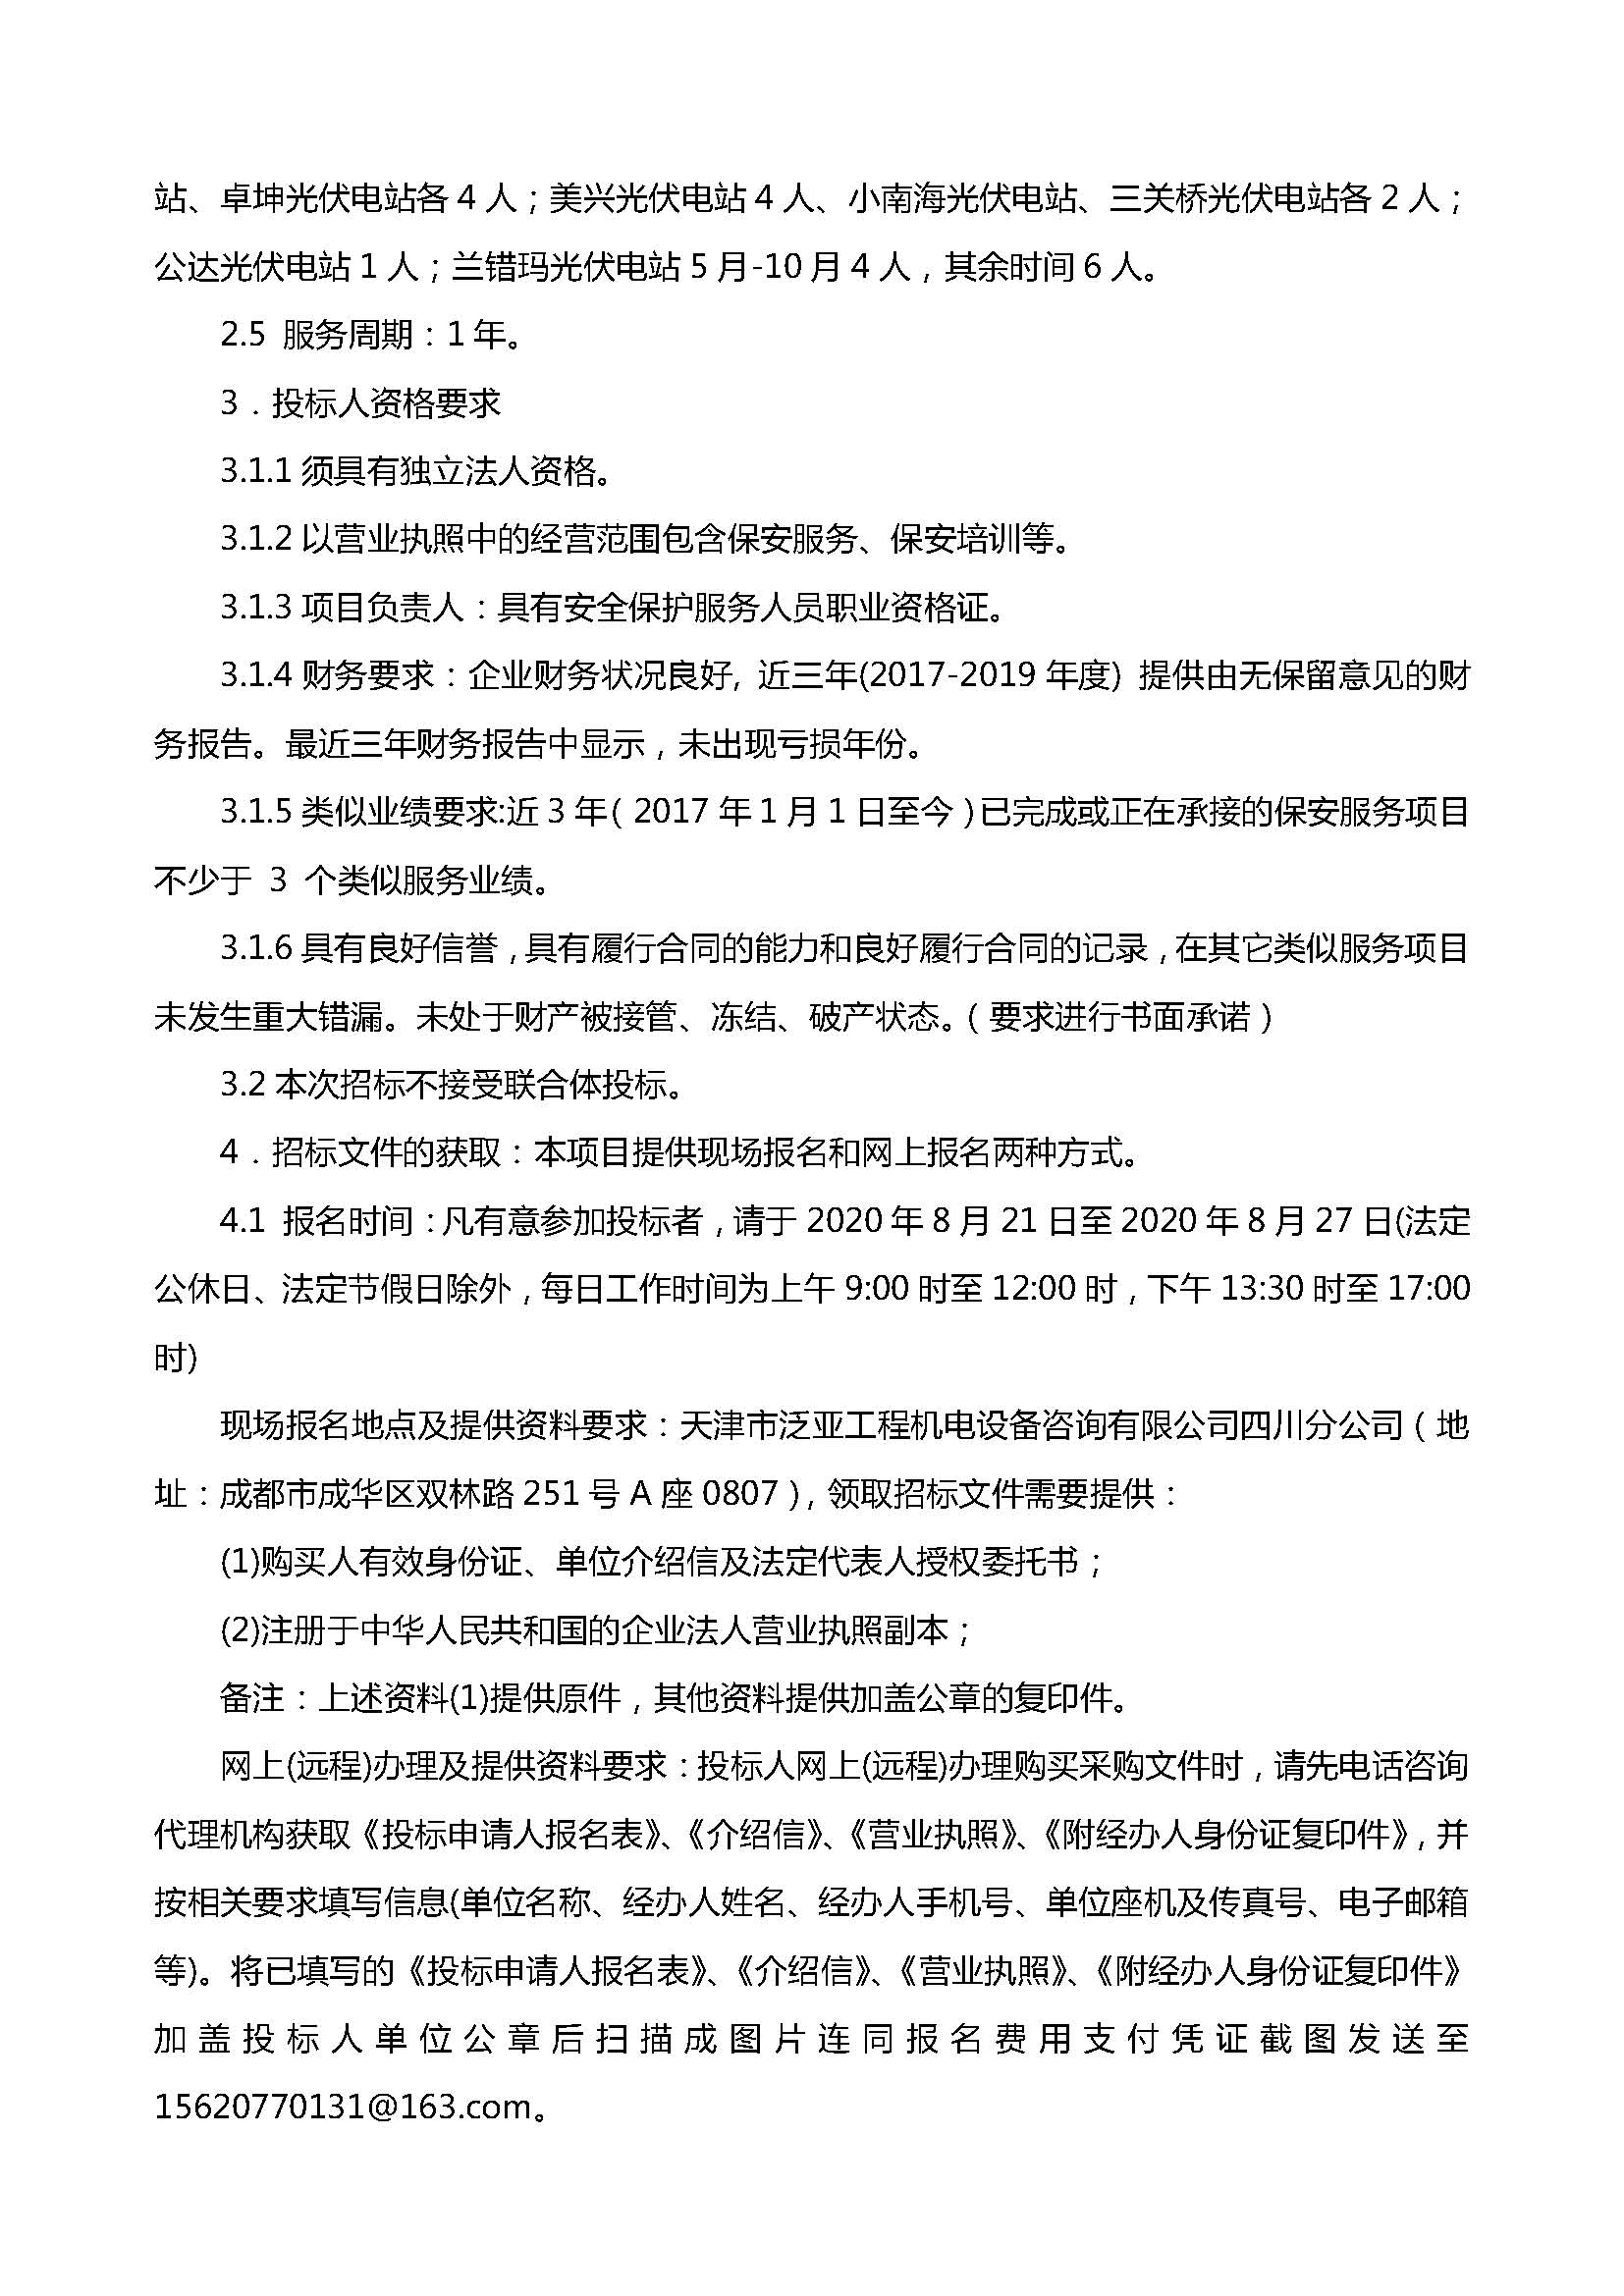 leyu乐鱼体育APP官方网站下属项目公司保安服务单位选聘招标公告(1)_页面_2.jpg